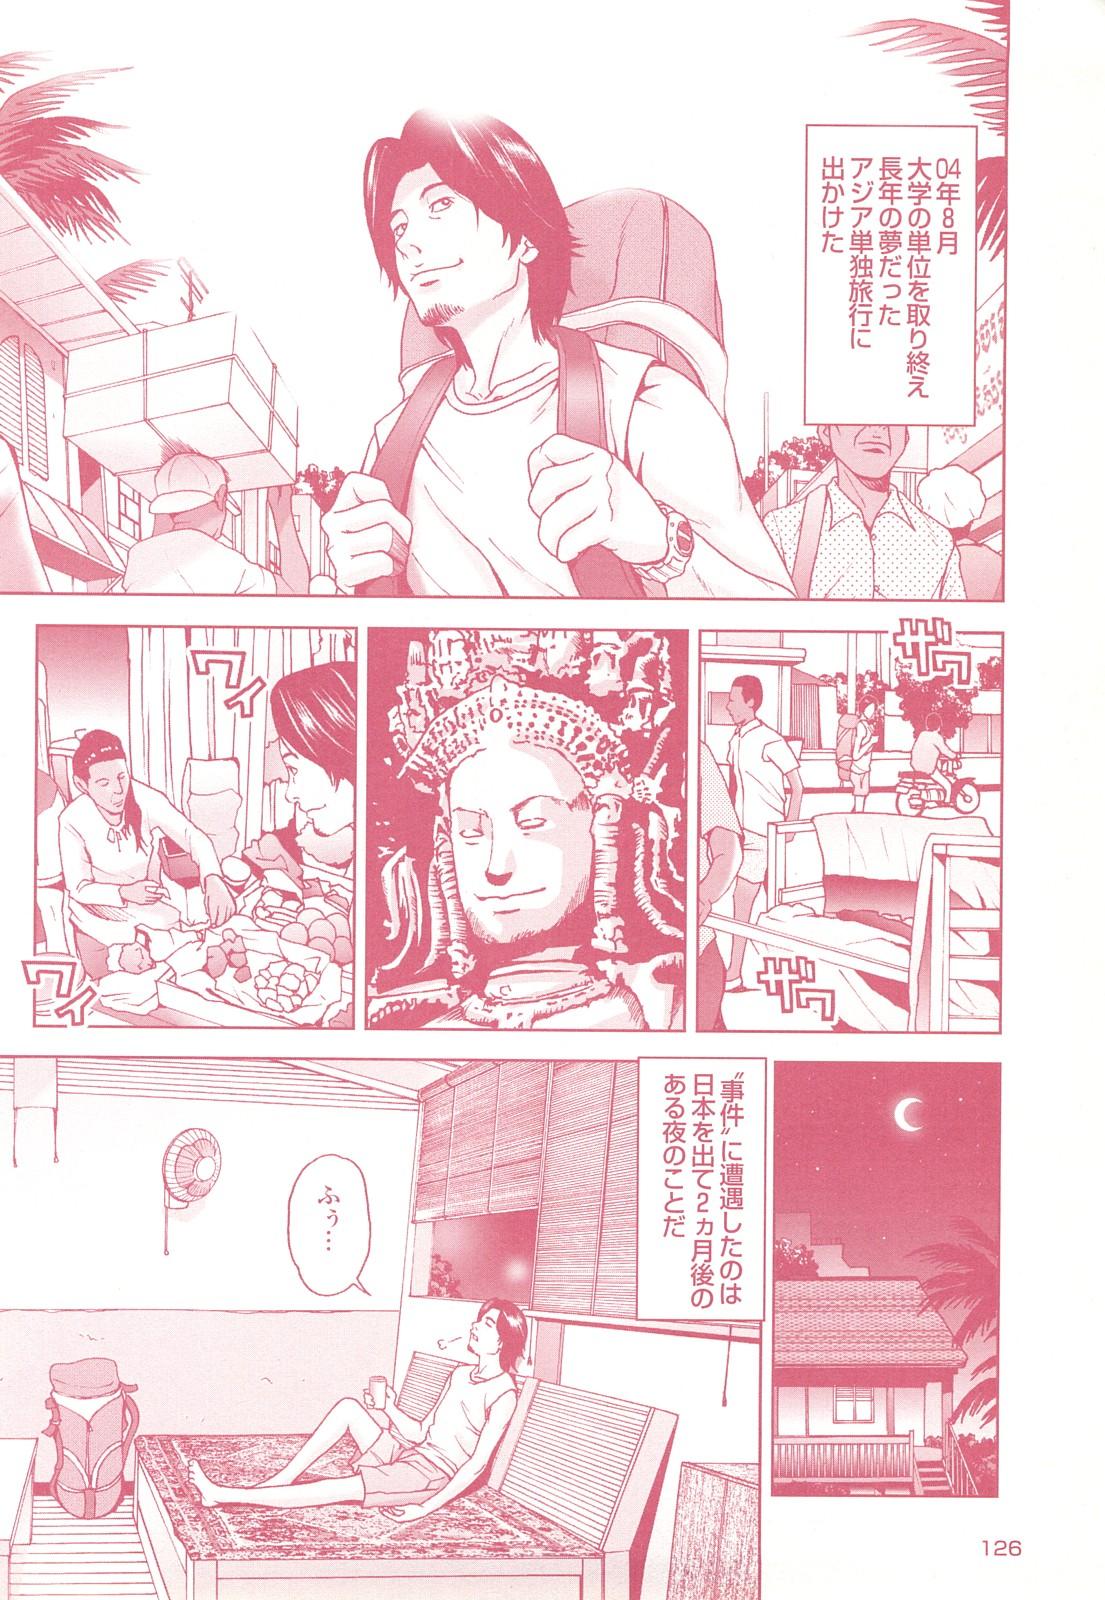 コミック裏モノJAPAN Vol.18 今井のりたつスペシャル号 125